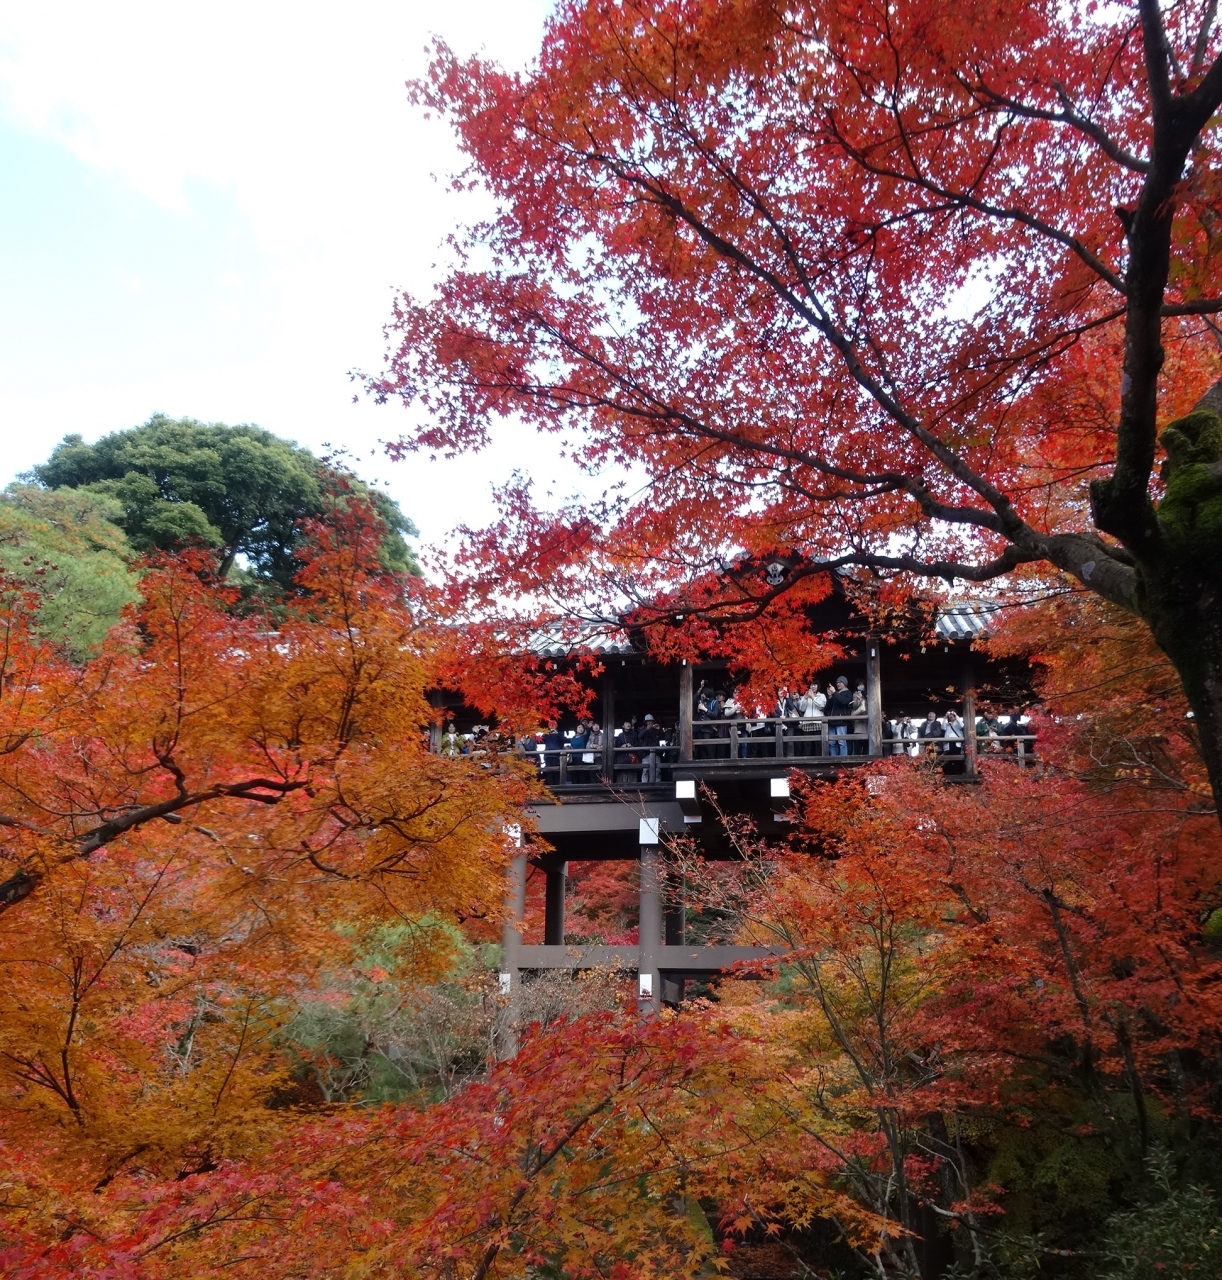 永観堂の紅葉か 東福寺の紅葉か 自分なりに決着をつけてみるわ 京都の旅行記 ブログ By パリ好きおばさん フォートラベル